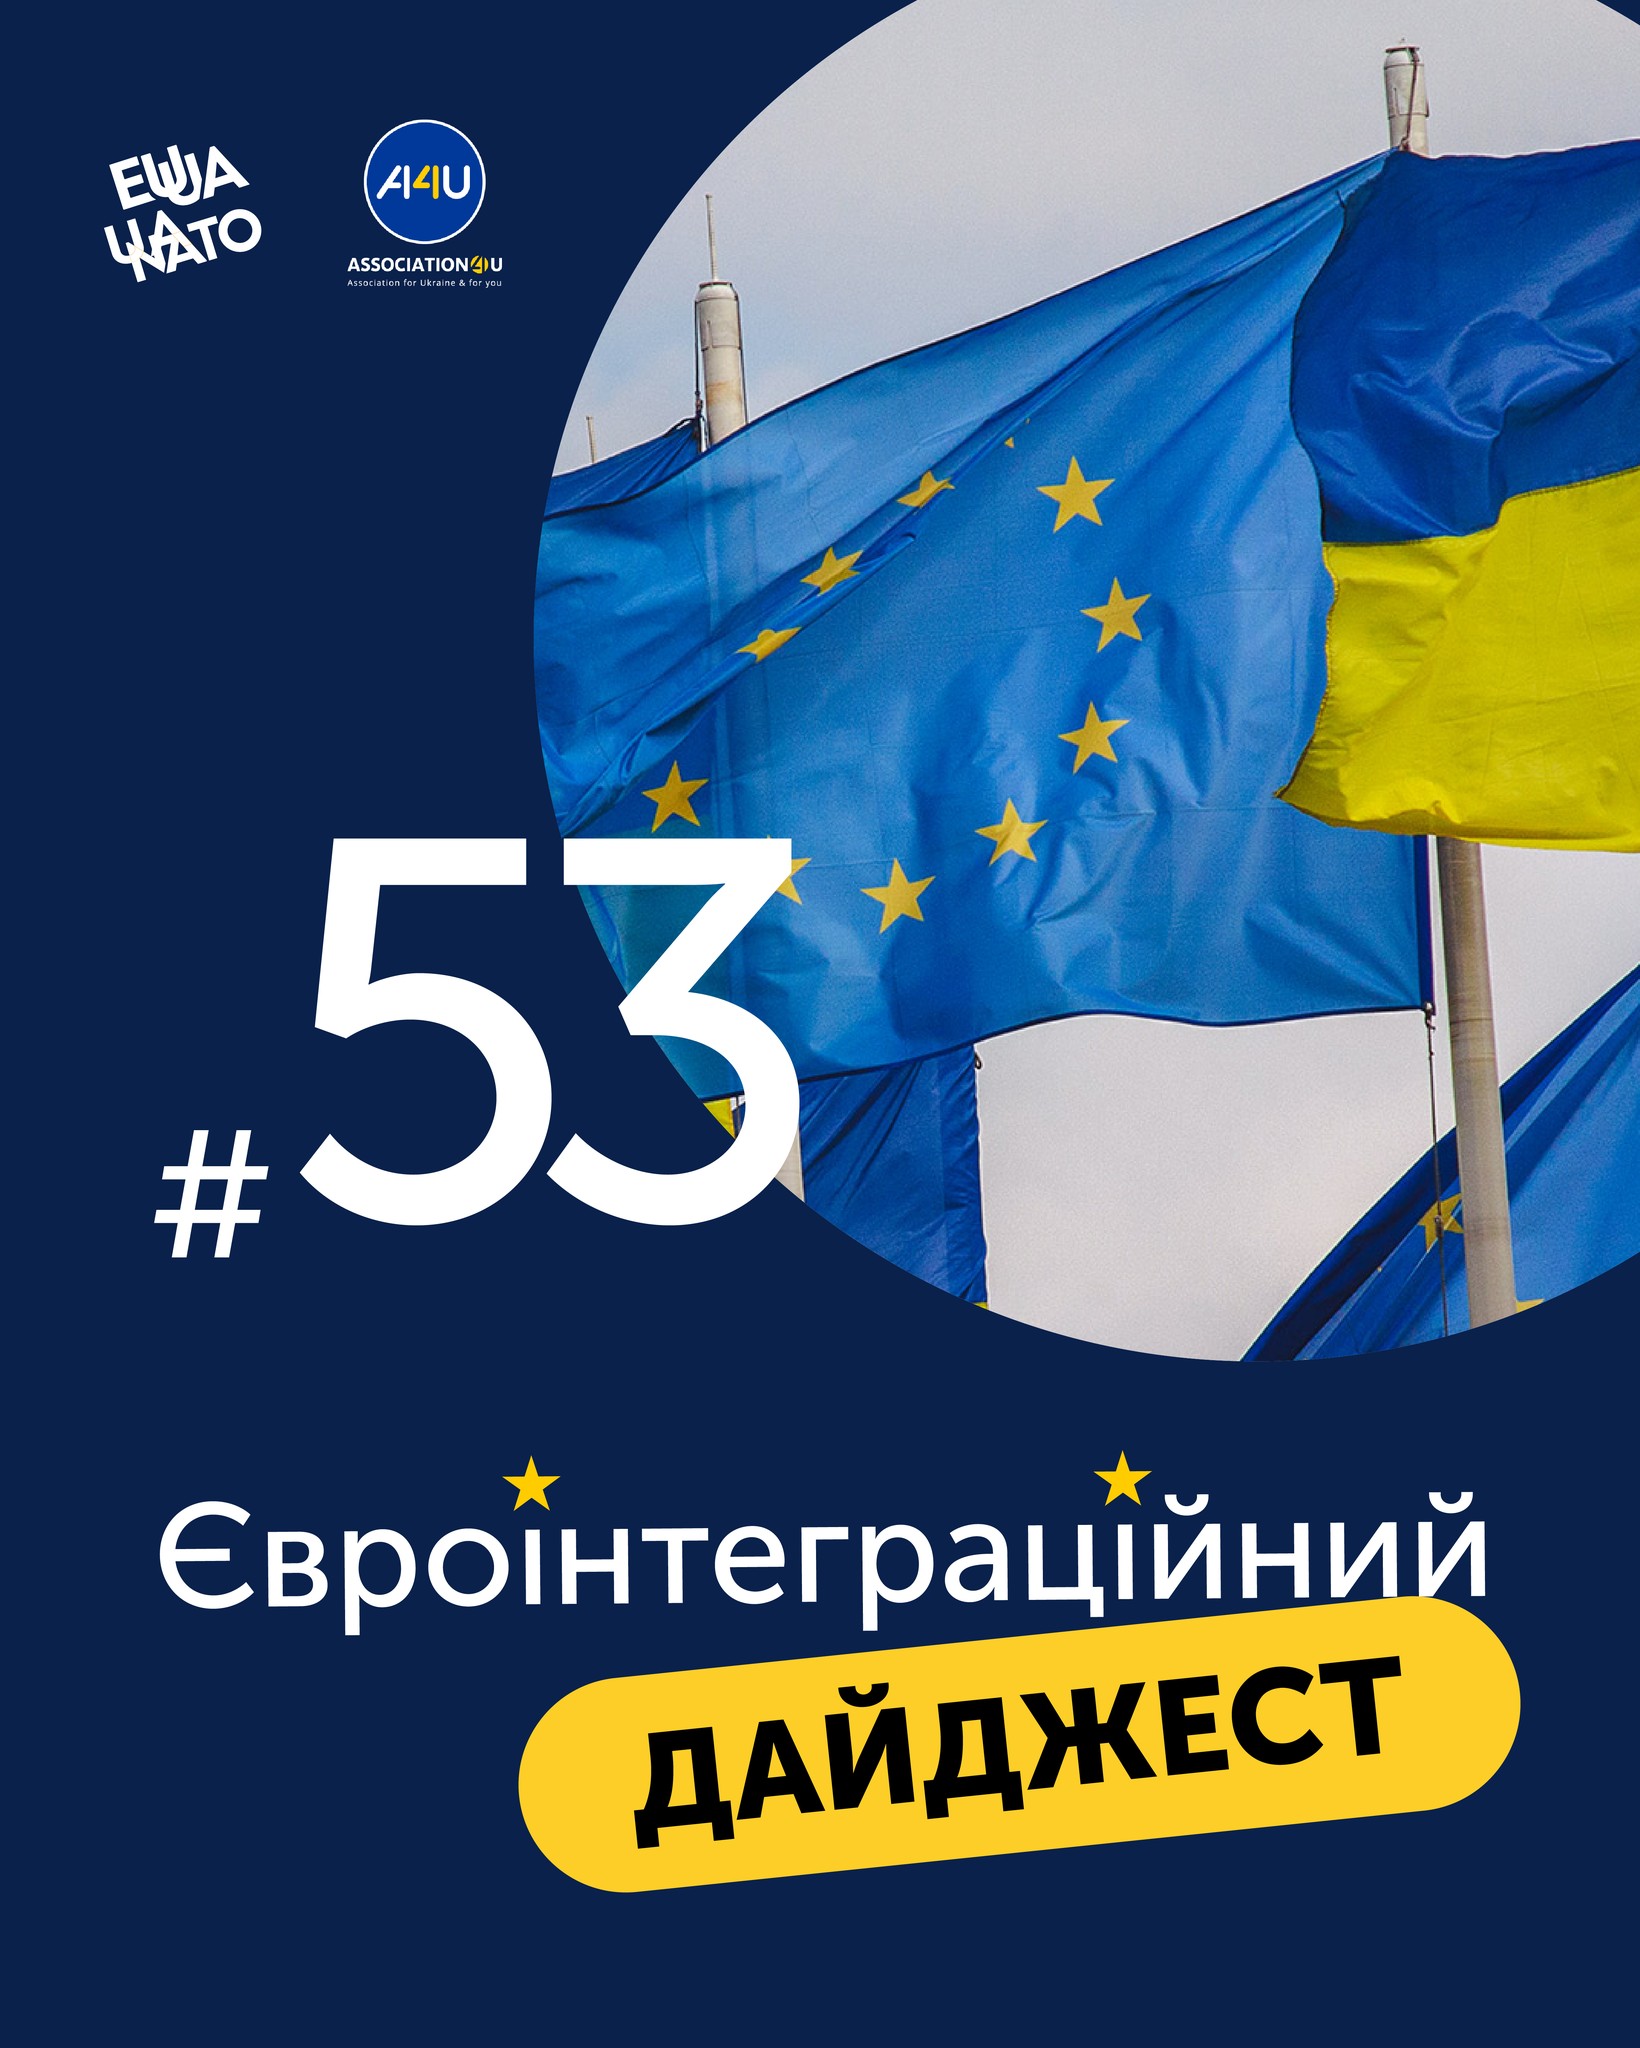 Щотижнева добірка головних новин щодо поступу України до членства в ЄС та співпраці з Євросоюзом вже чекає на вас! 